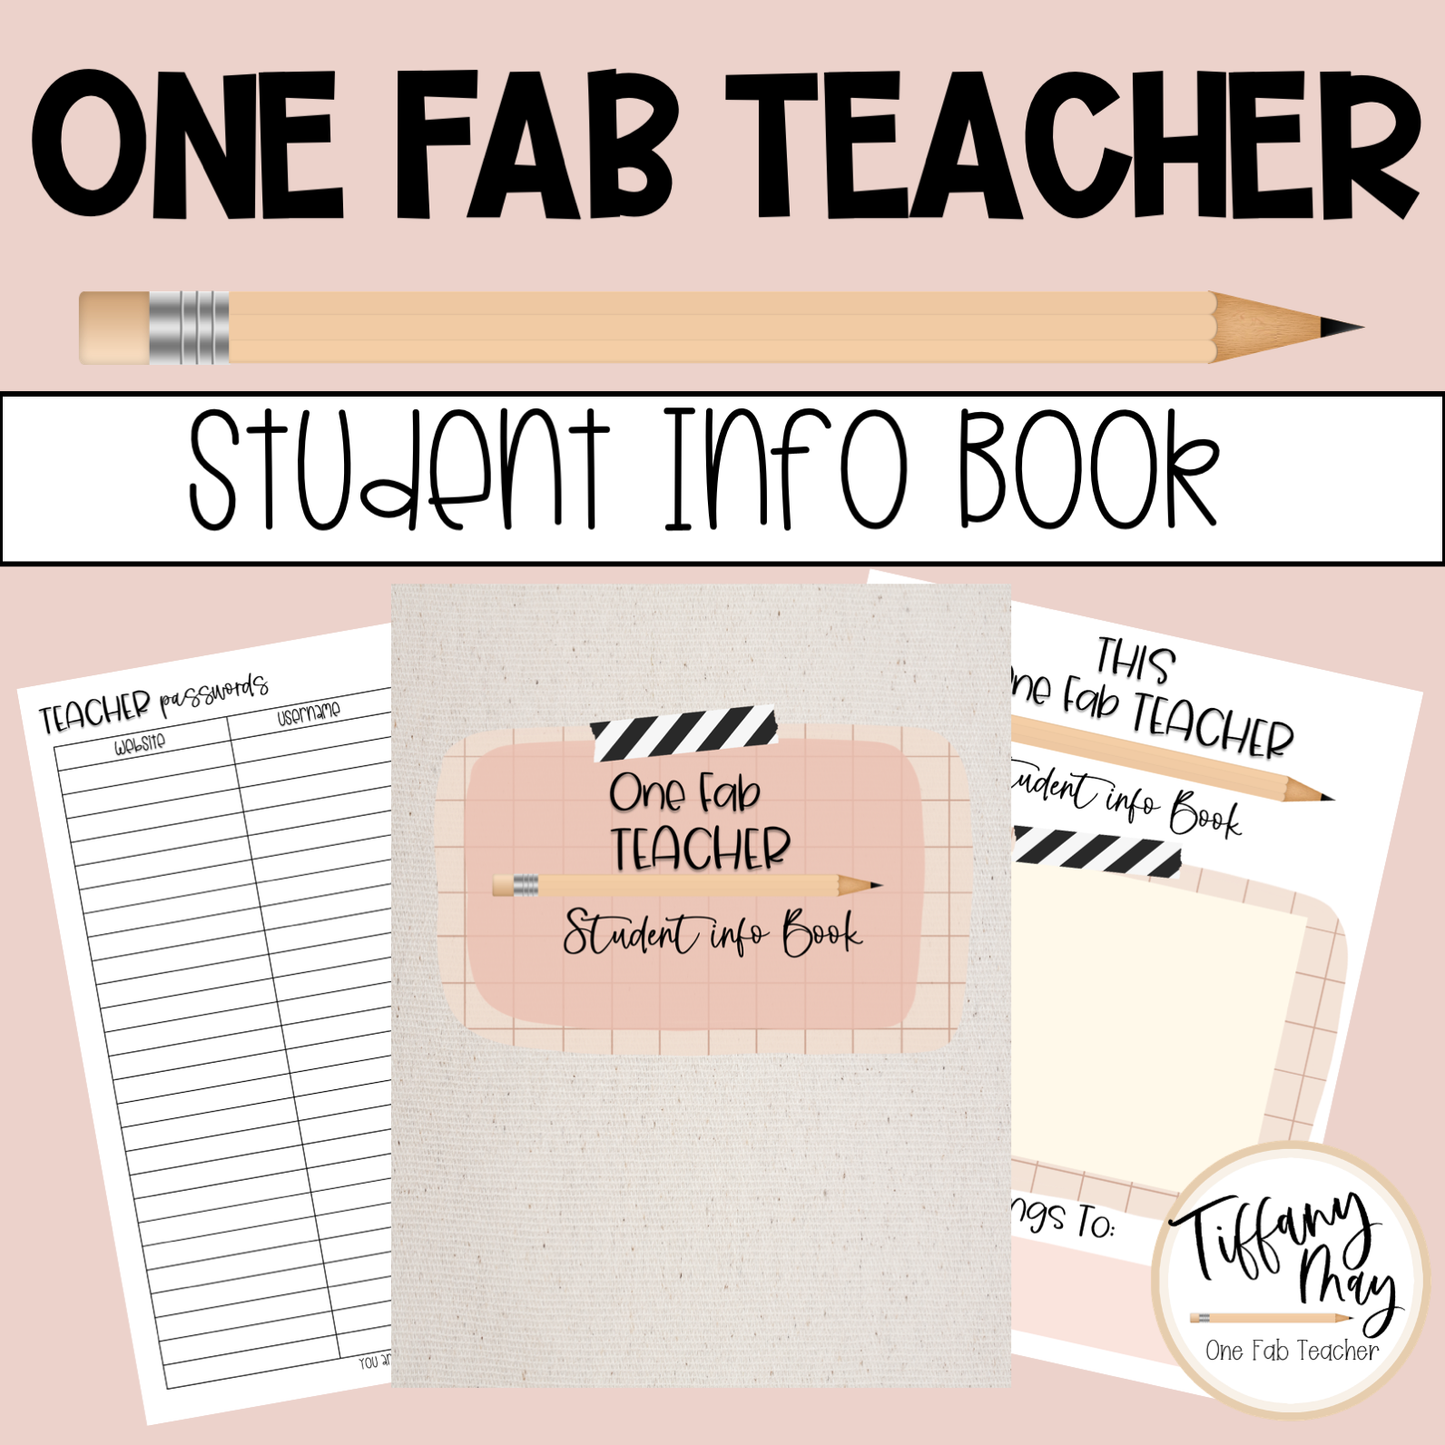 One Fab Teacher Student Info Book